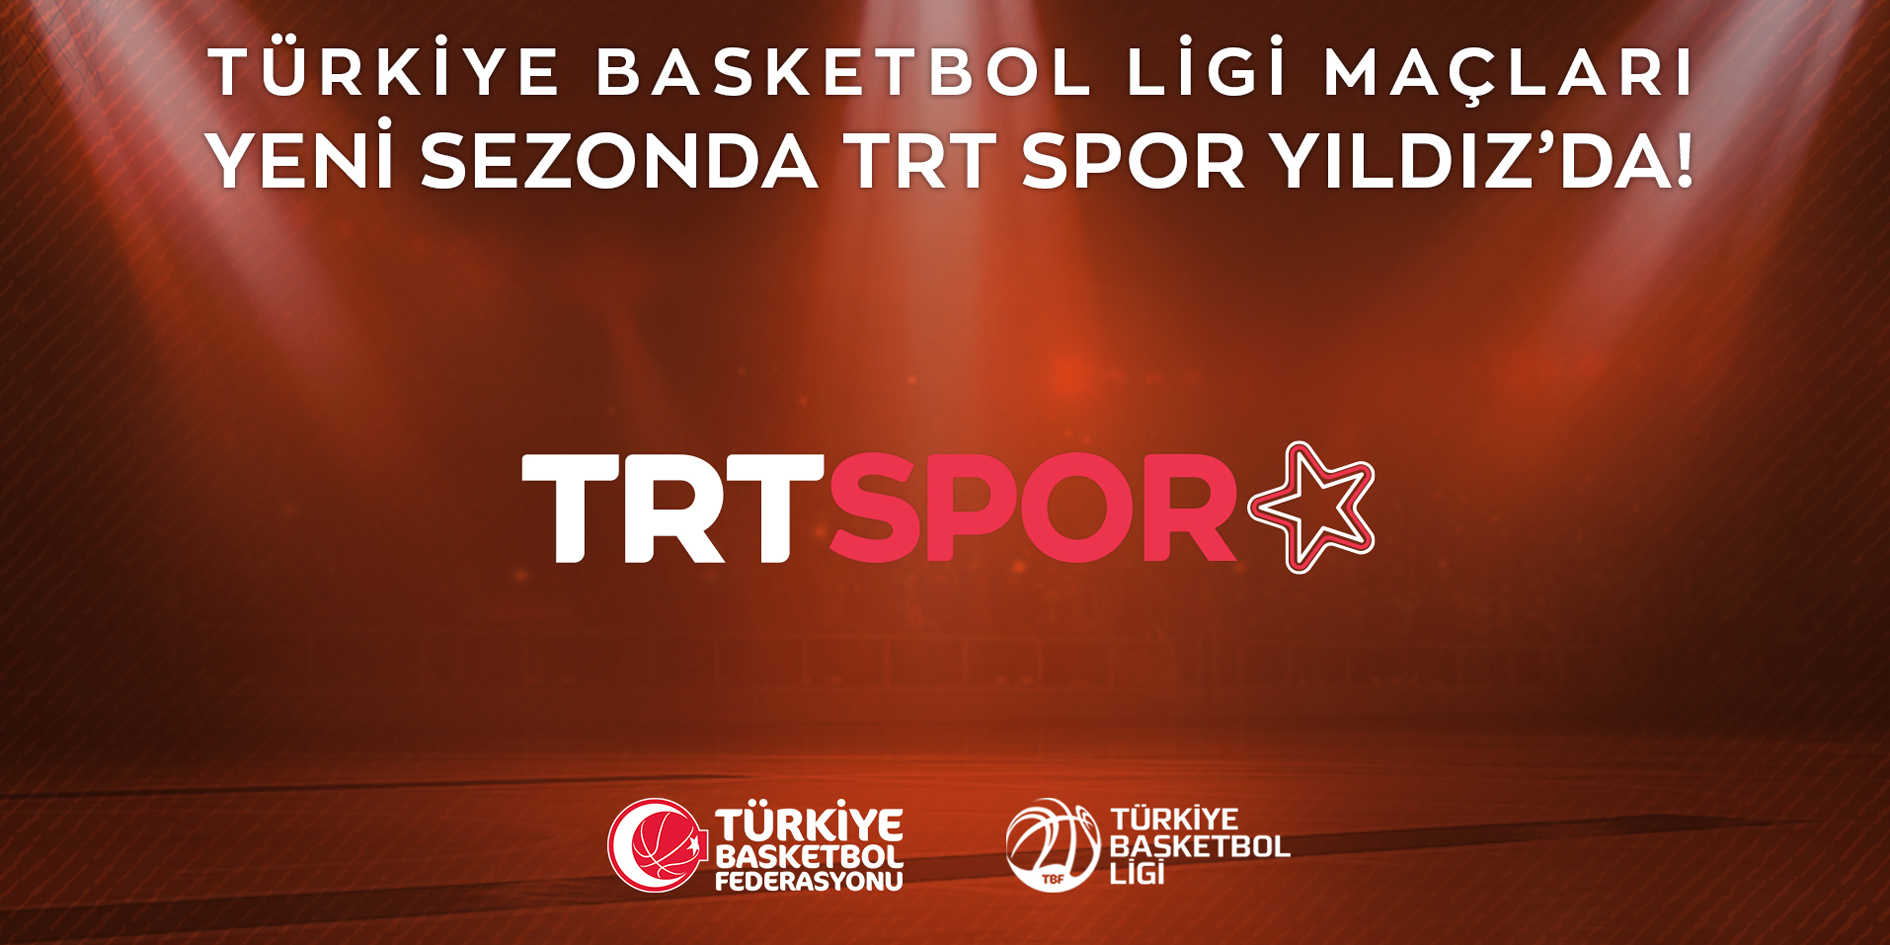 Türkiye Basketbol Ligi Yeni Sezonda da TRT Spor Yıldızda